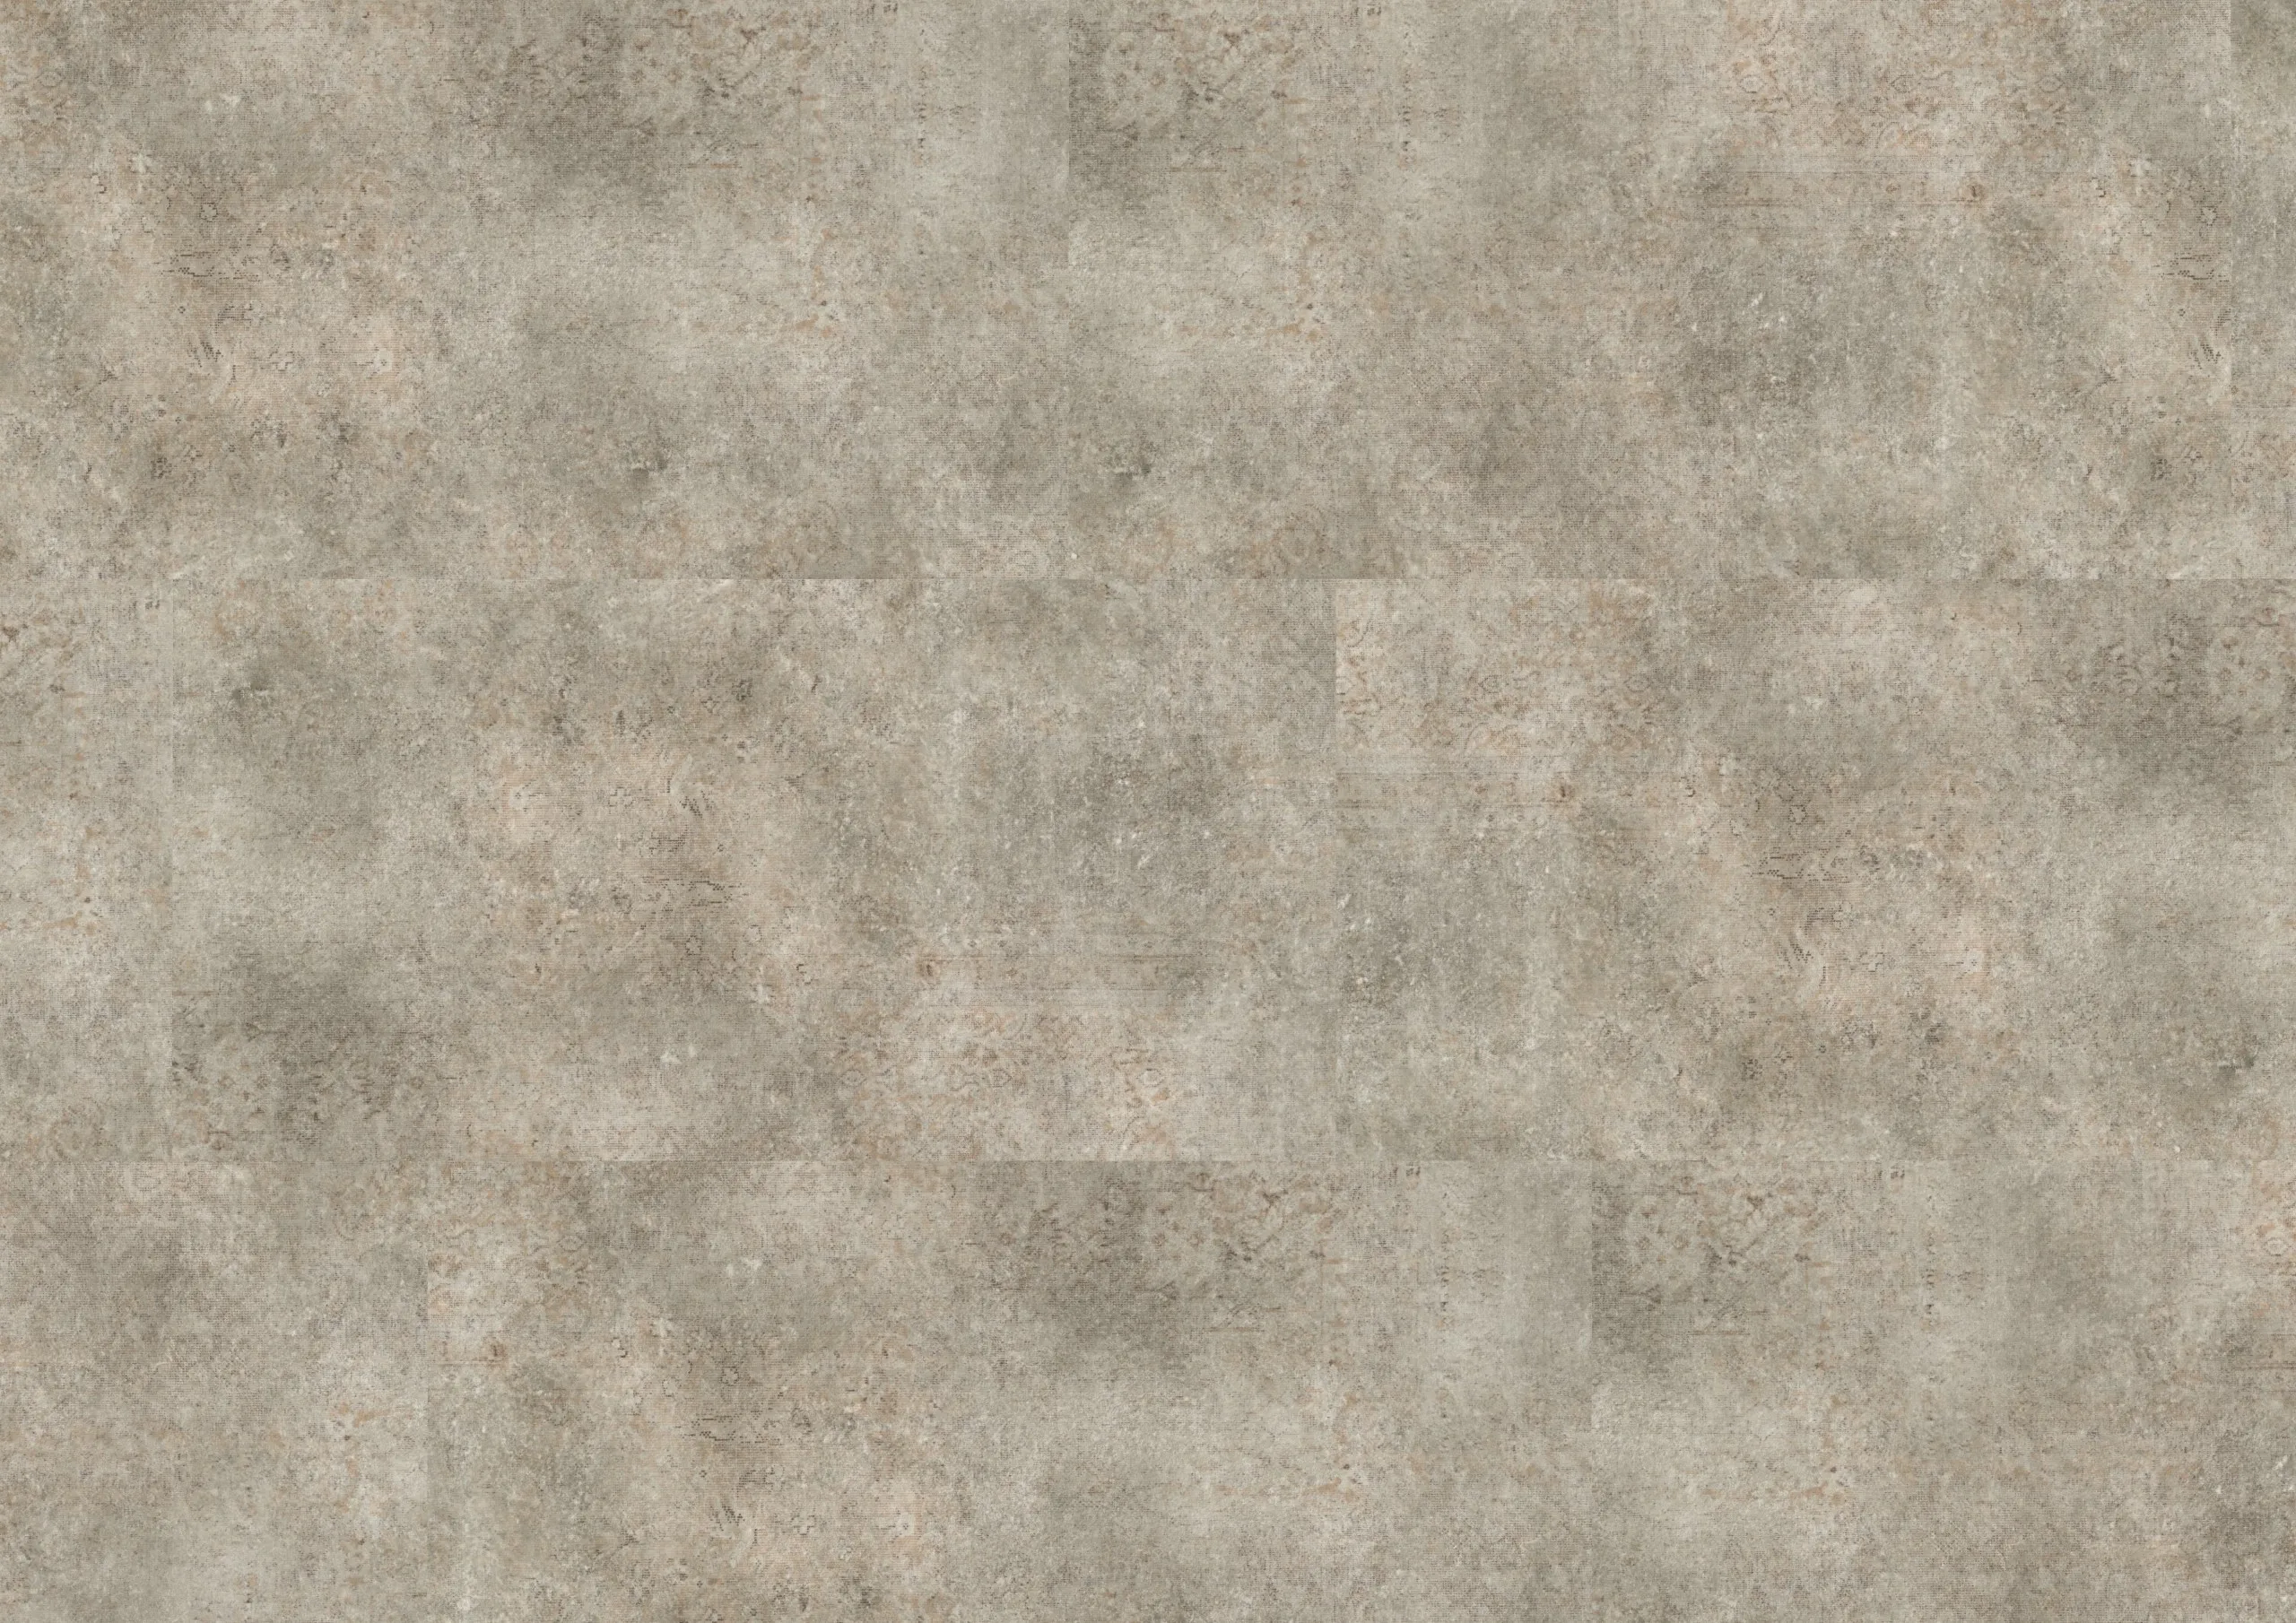 Draufsicht_PL102C_Carpet_Concrete.jpg